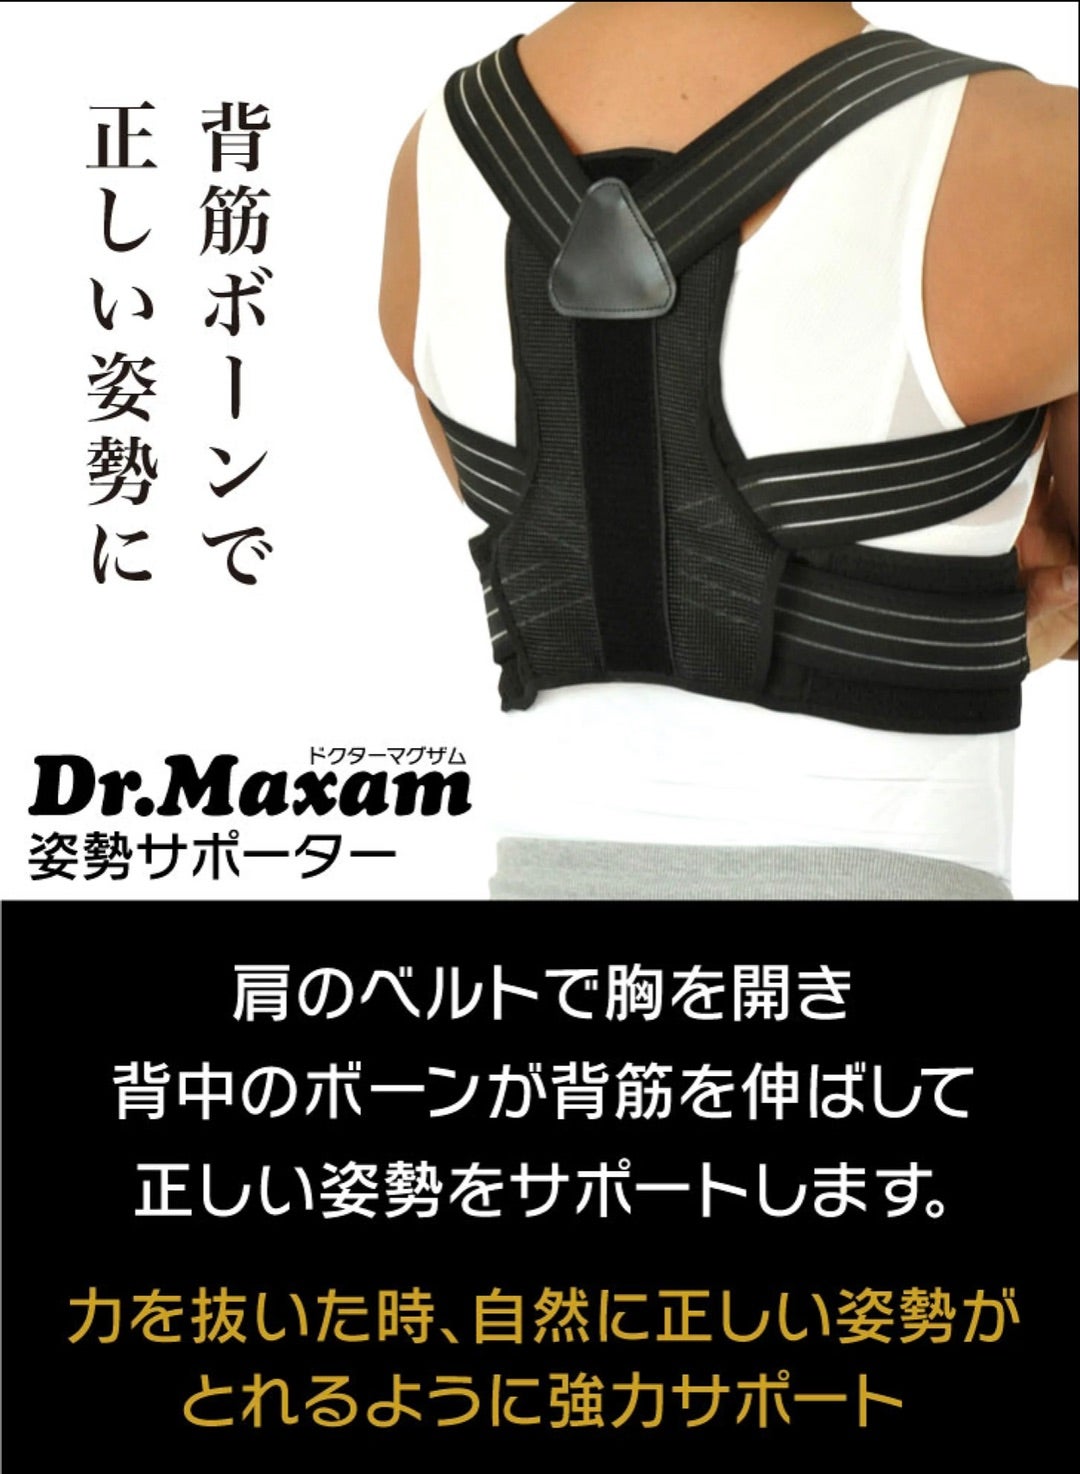 Dr.Maxam 姿勢サポーター - エクササイズ